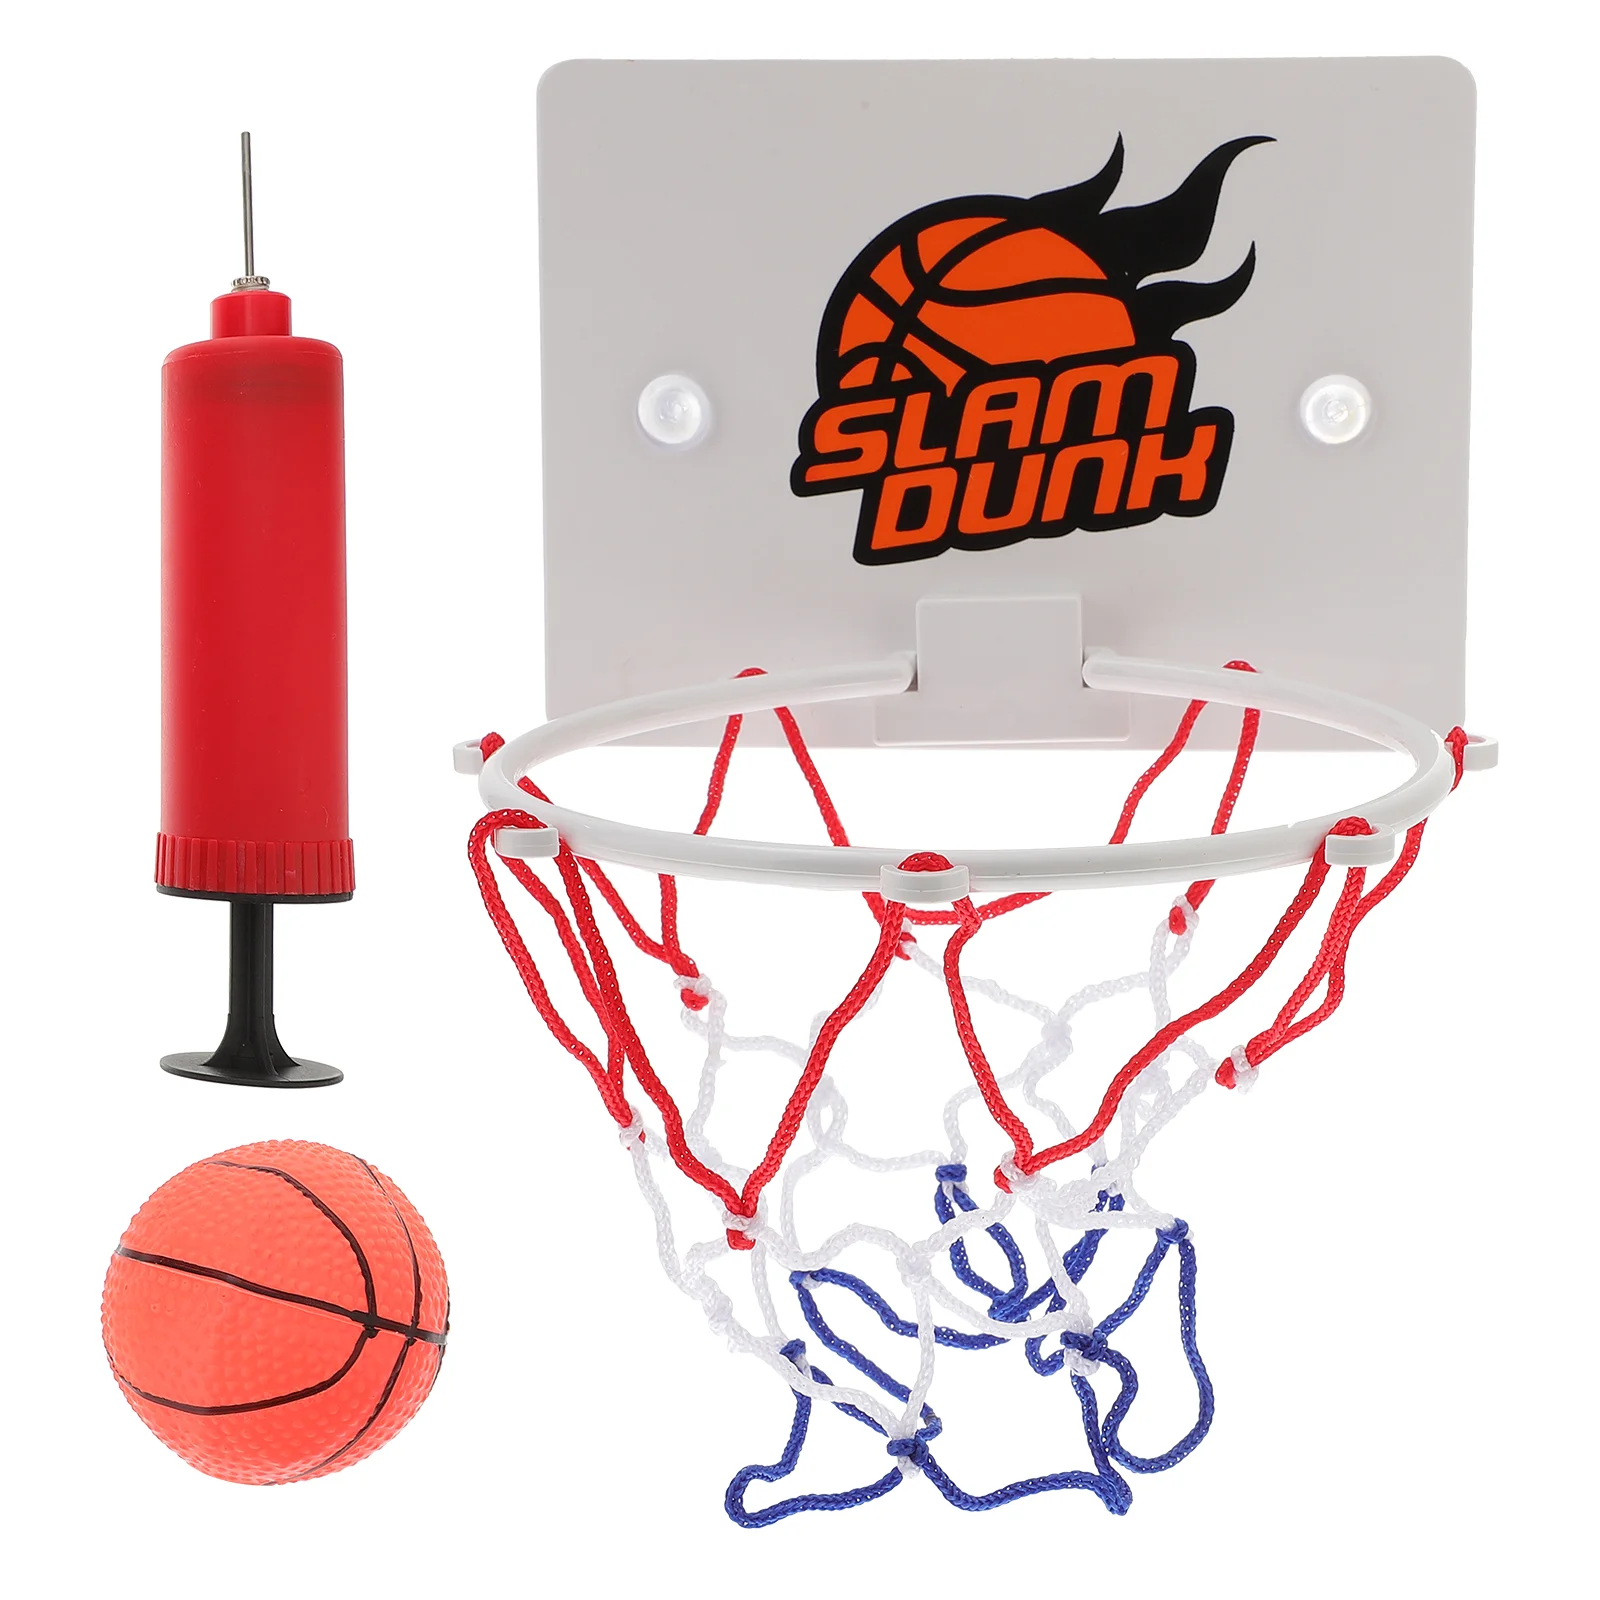 

1 комплект подвесных баскетбольных досок для баскетбола для дома и улицы, Детские баскетбольные игры (красочные)